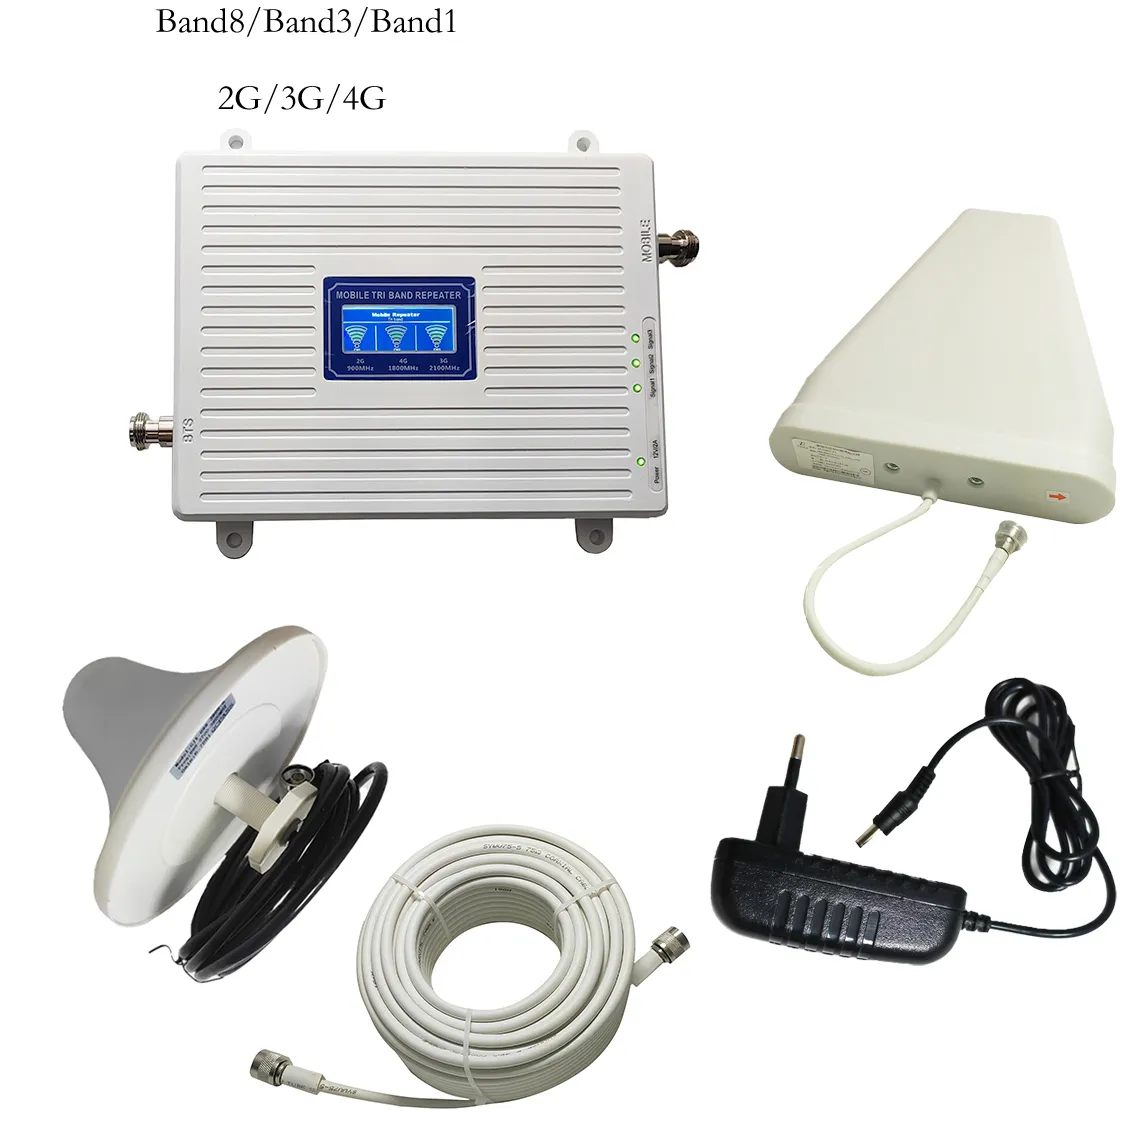 900-1800-2100MHz 2G 3G 4G repetidor de red de teléfono celular/amplificador de señal